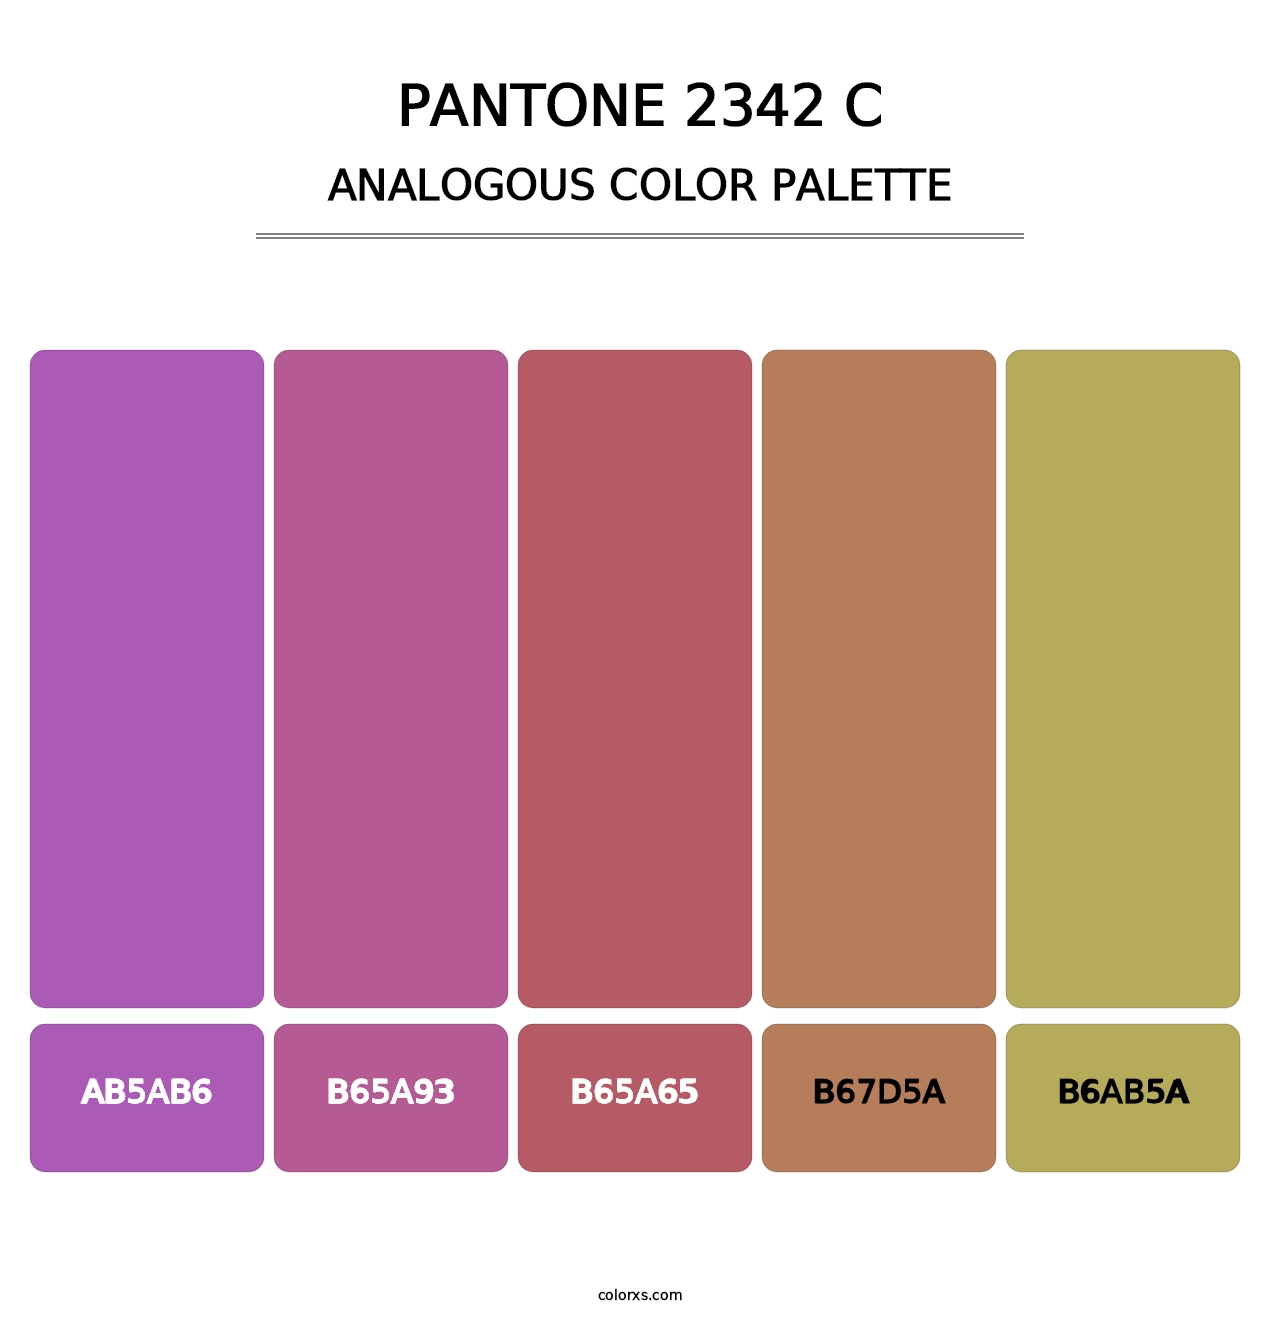 PANTONE 2342 C - Analogous Color Palette